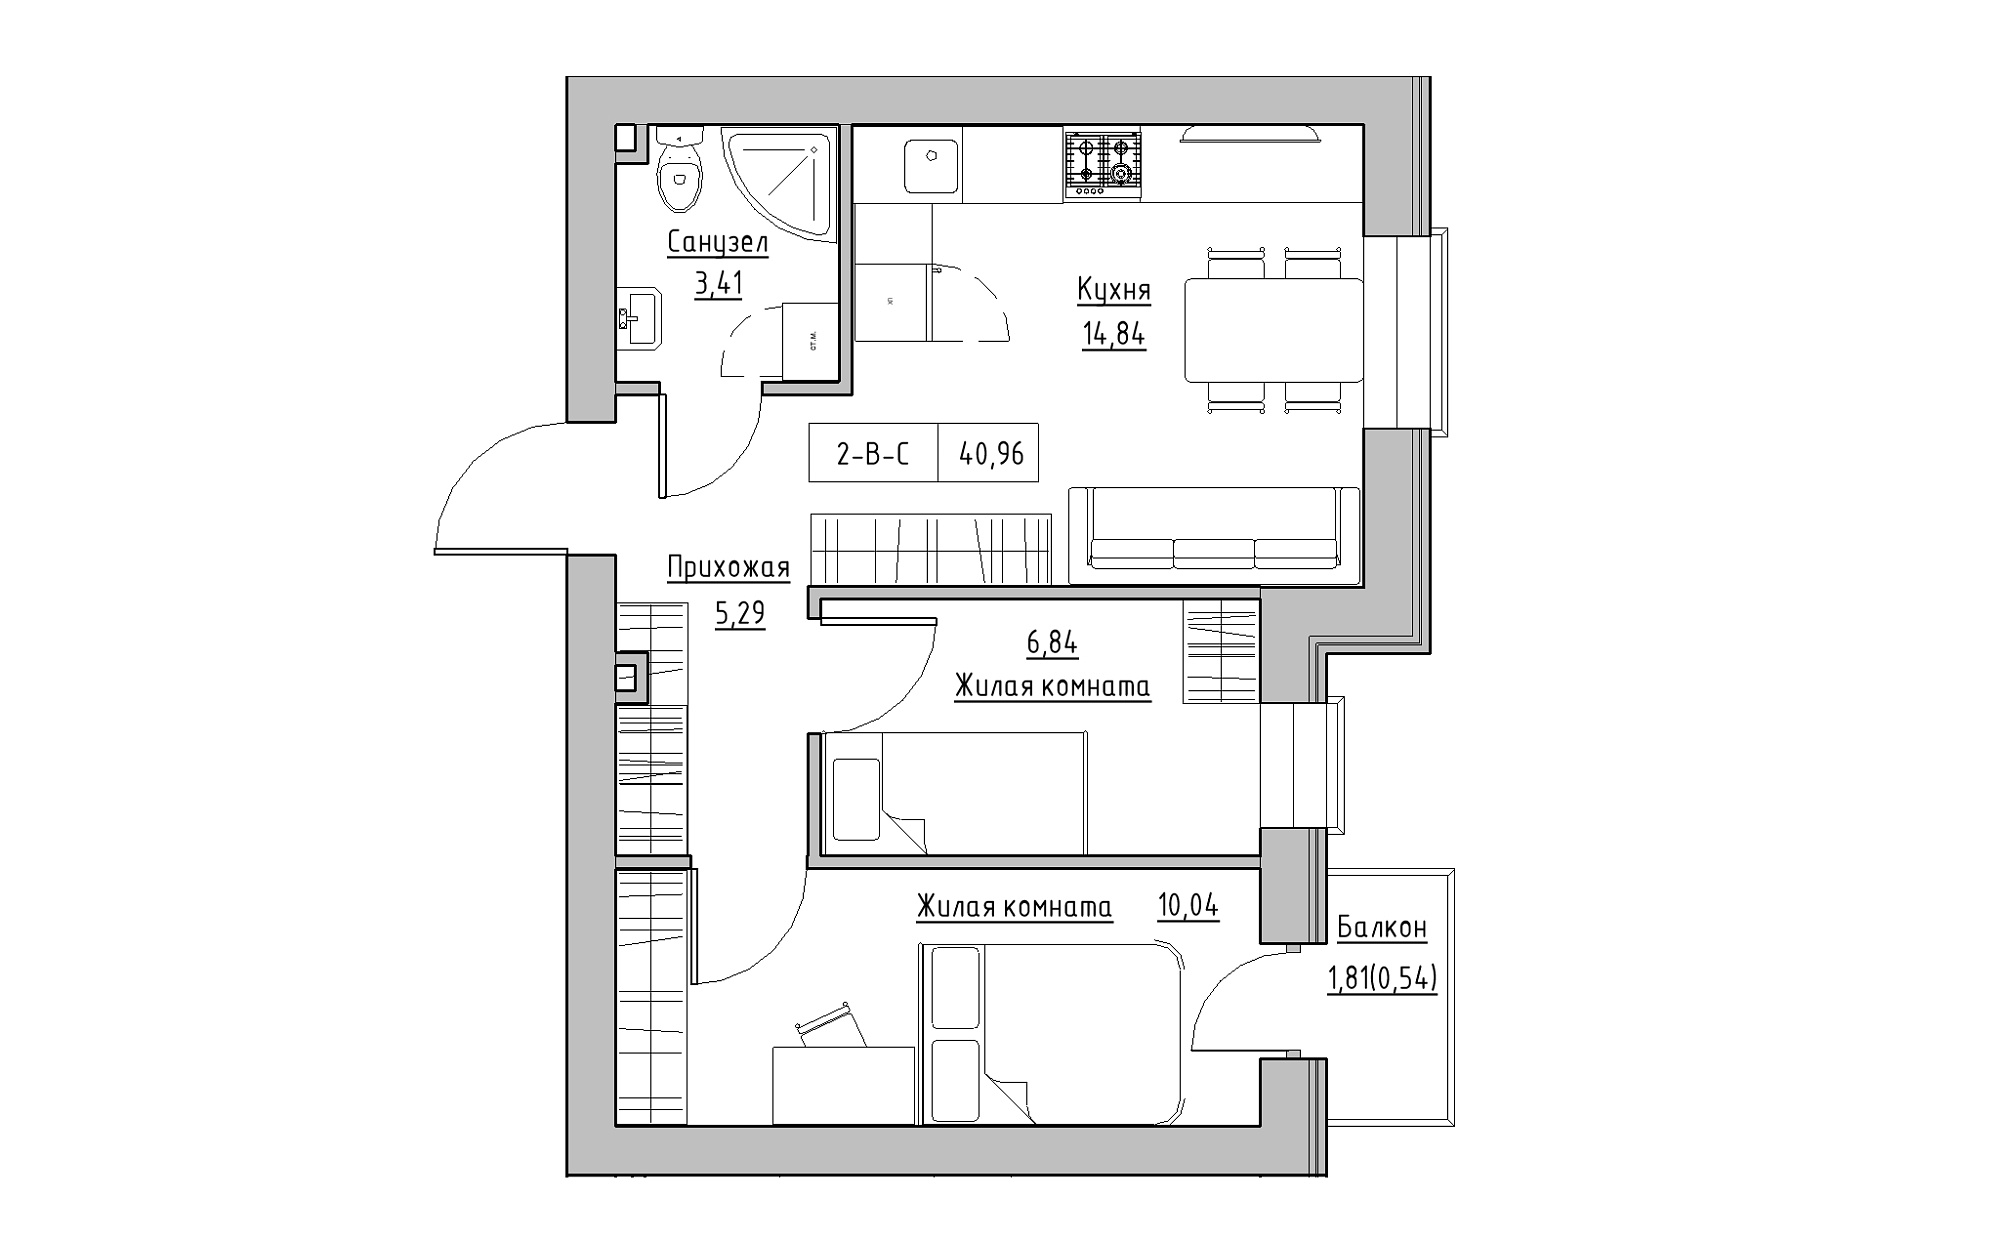 Планировка 2-к квартира площей 40.96м2, KS-022-02/0010.